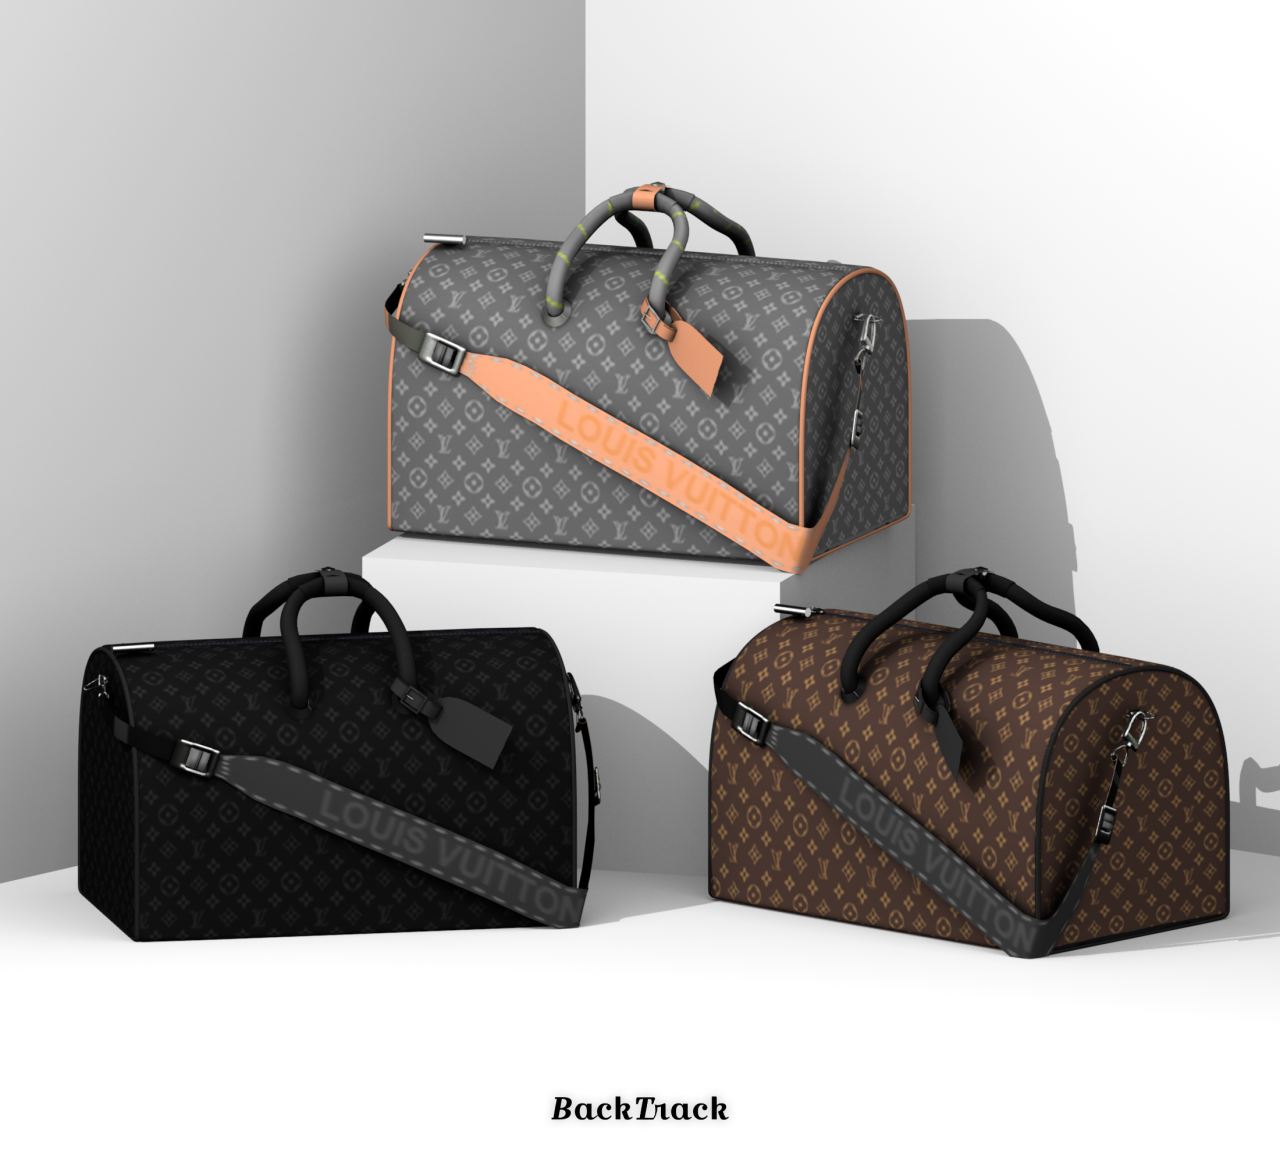 Louis Vuitton Luggage Set, Louis Vuitton, via Tumblr